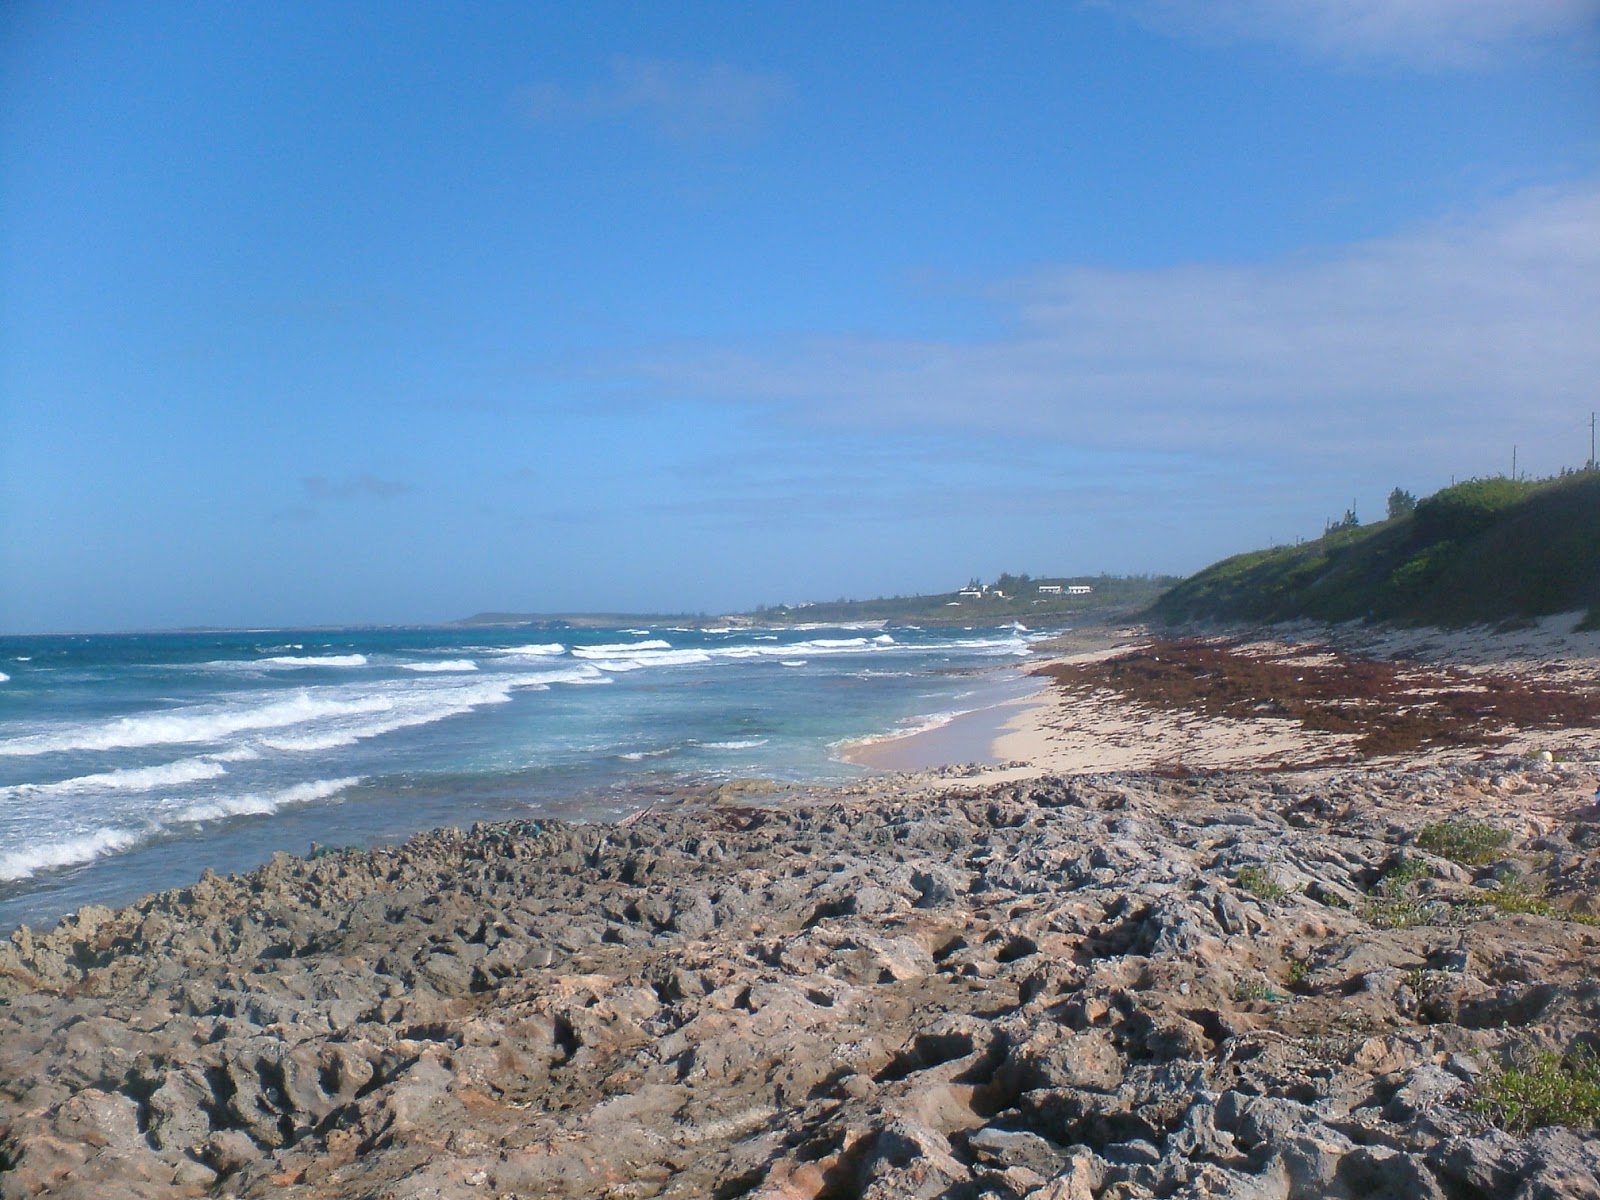 James Point beach'in fotoğrafı parlak kum ve kayalar yüzey ile